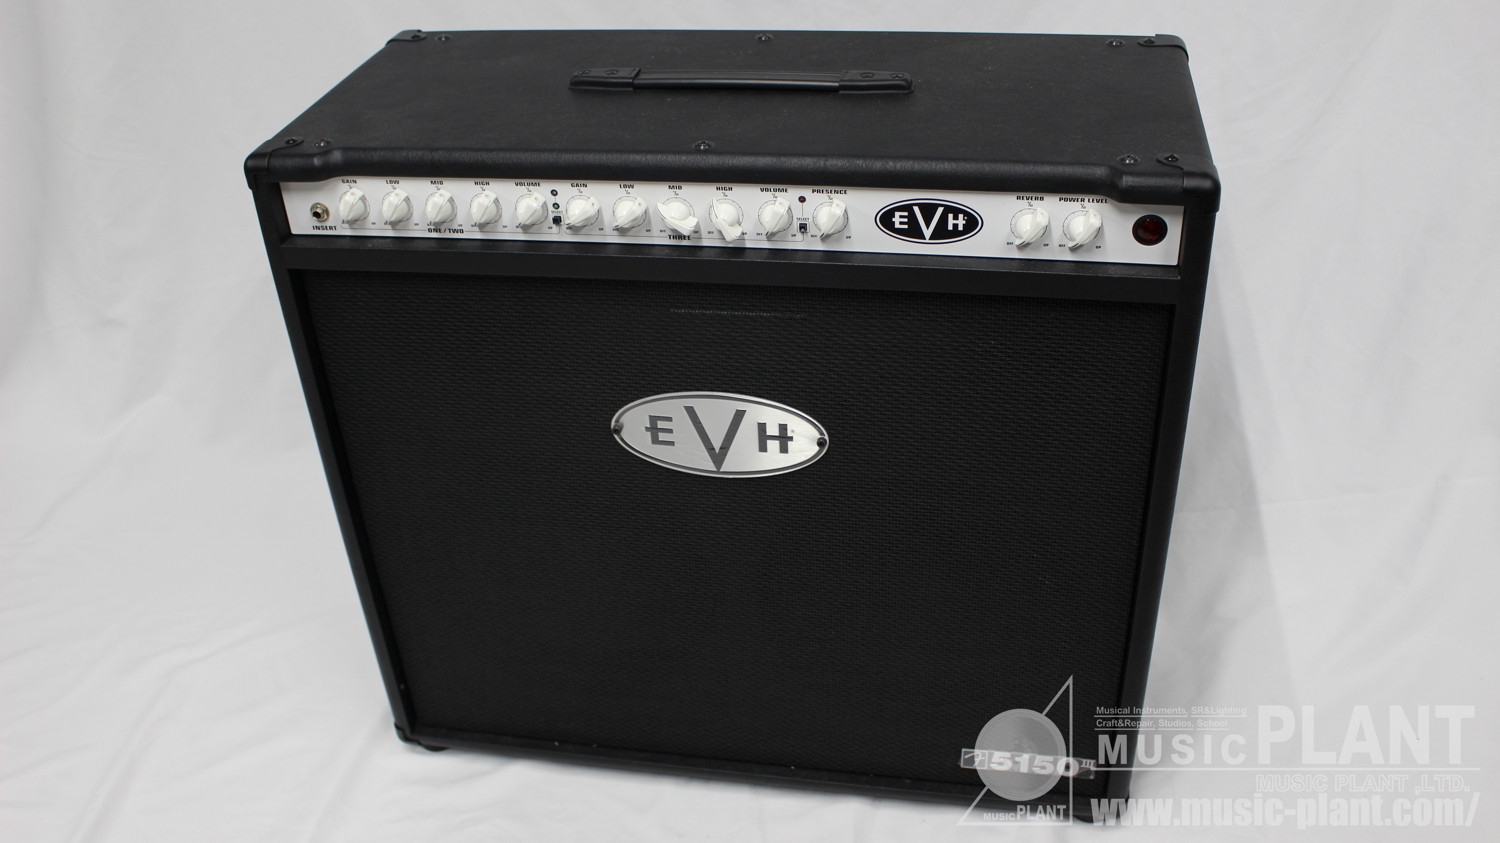 EVH ギターコンボアンプ5150 III 2×12 Combo中古品()売却済みです